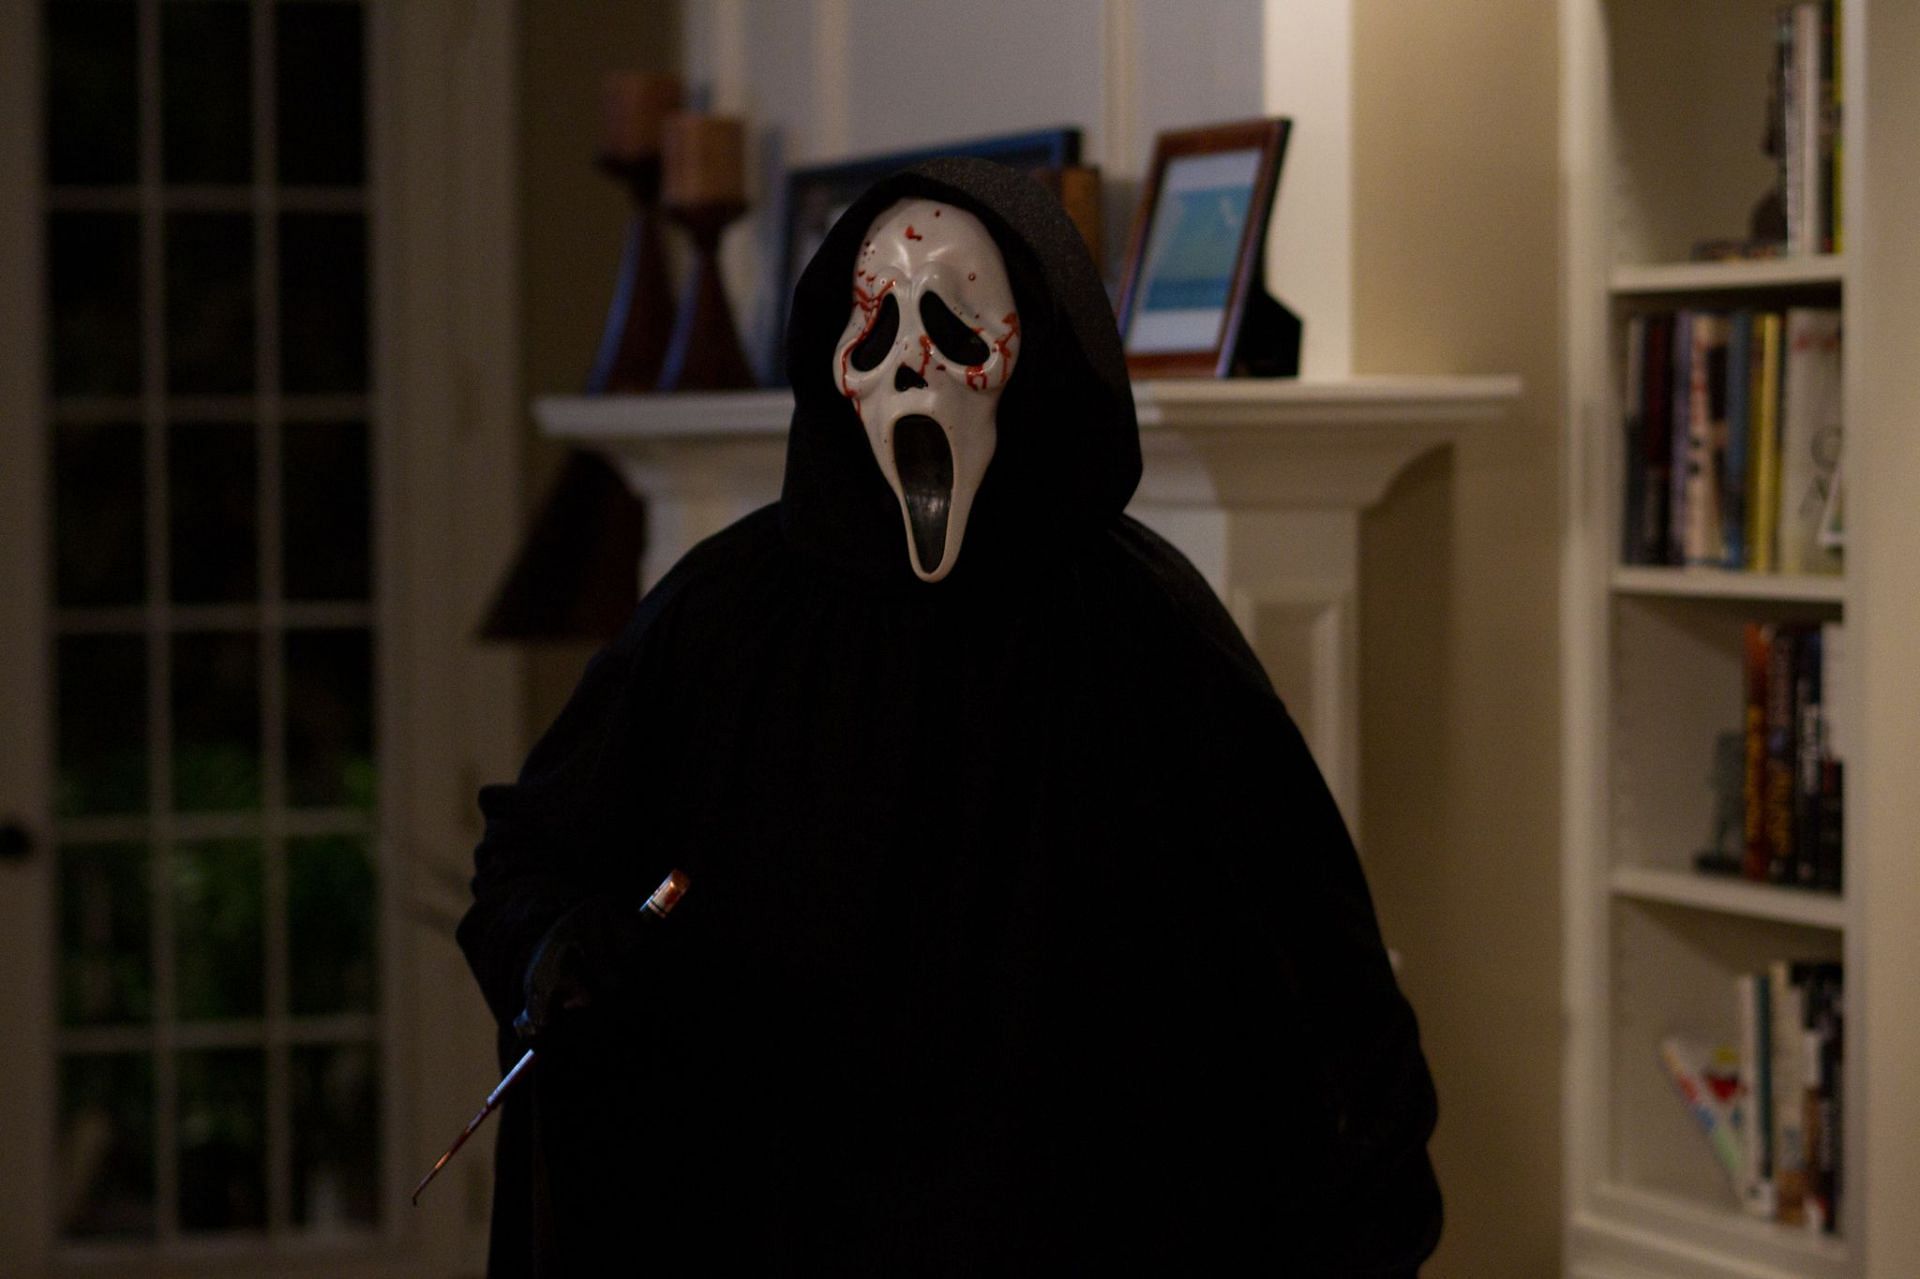 A still from Scream 4 (Image via IMDb)